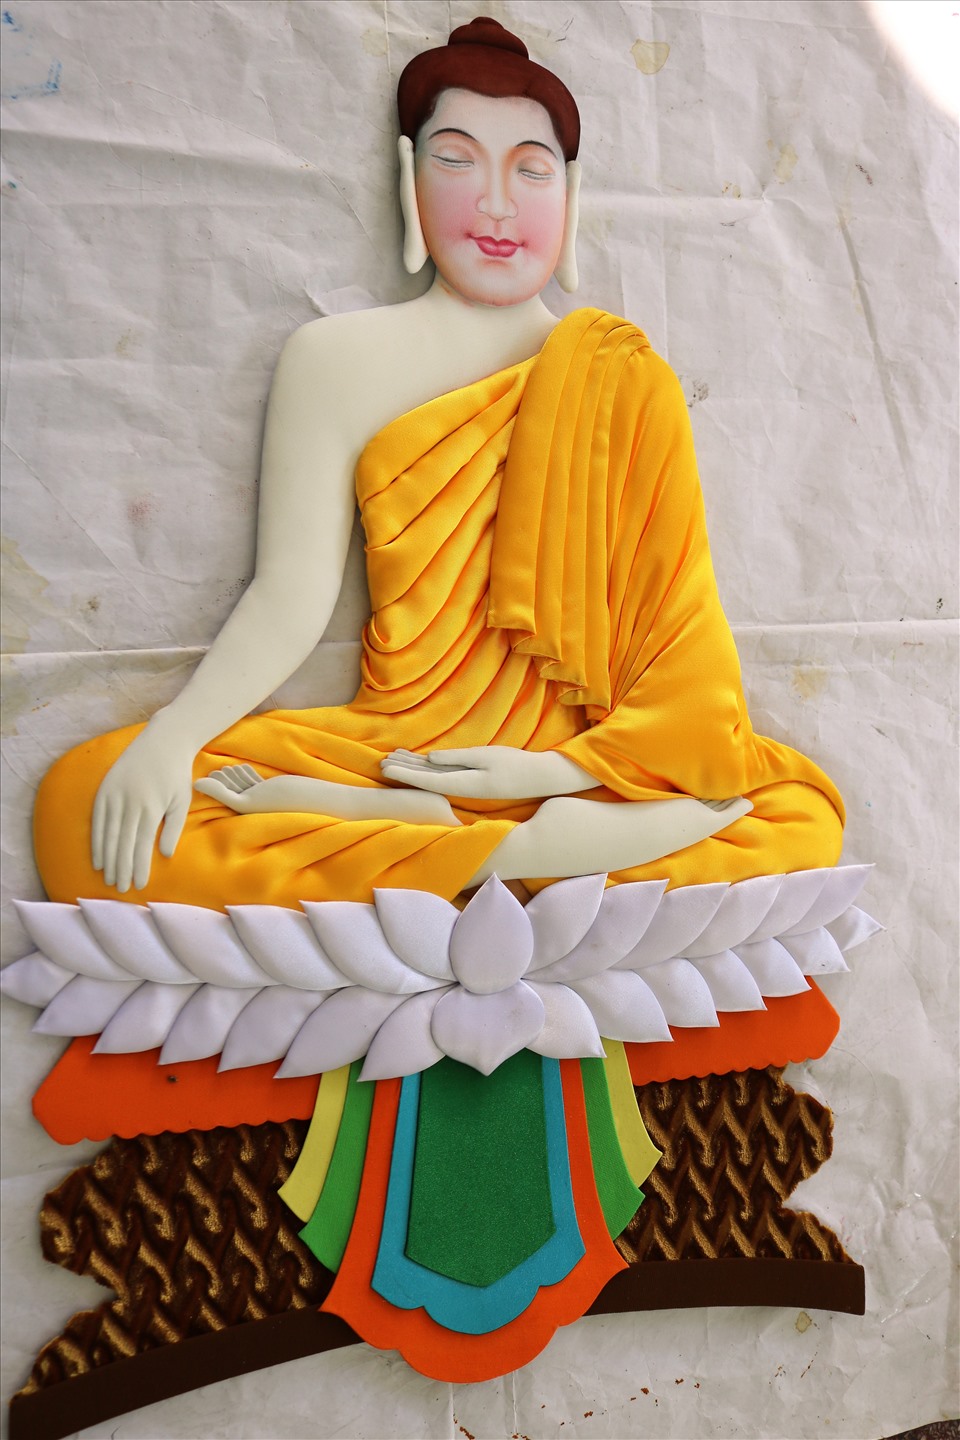 Tranh gói vải chân dung Phật được tạo hình hoàn chỉnh từ đôi tay khéo léo của nghệ ông Tai.